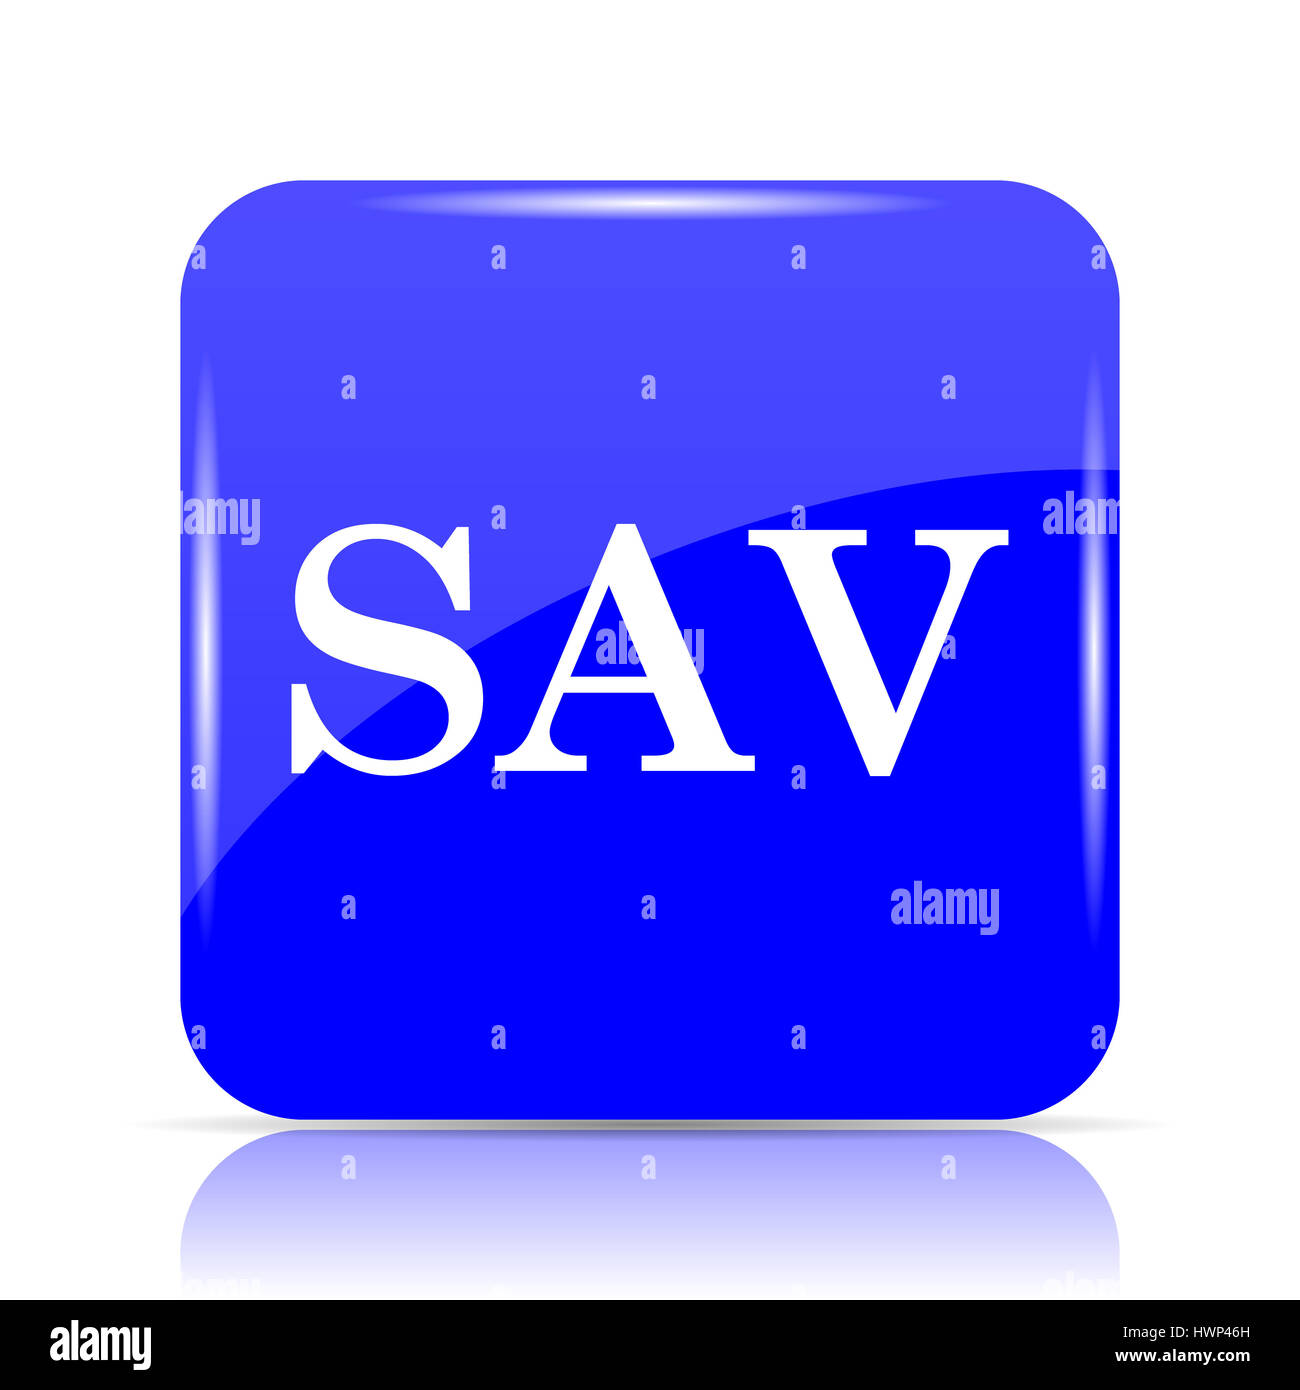 SAV icon, blue website button on white background. Stock Photo